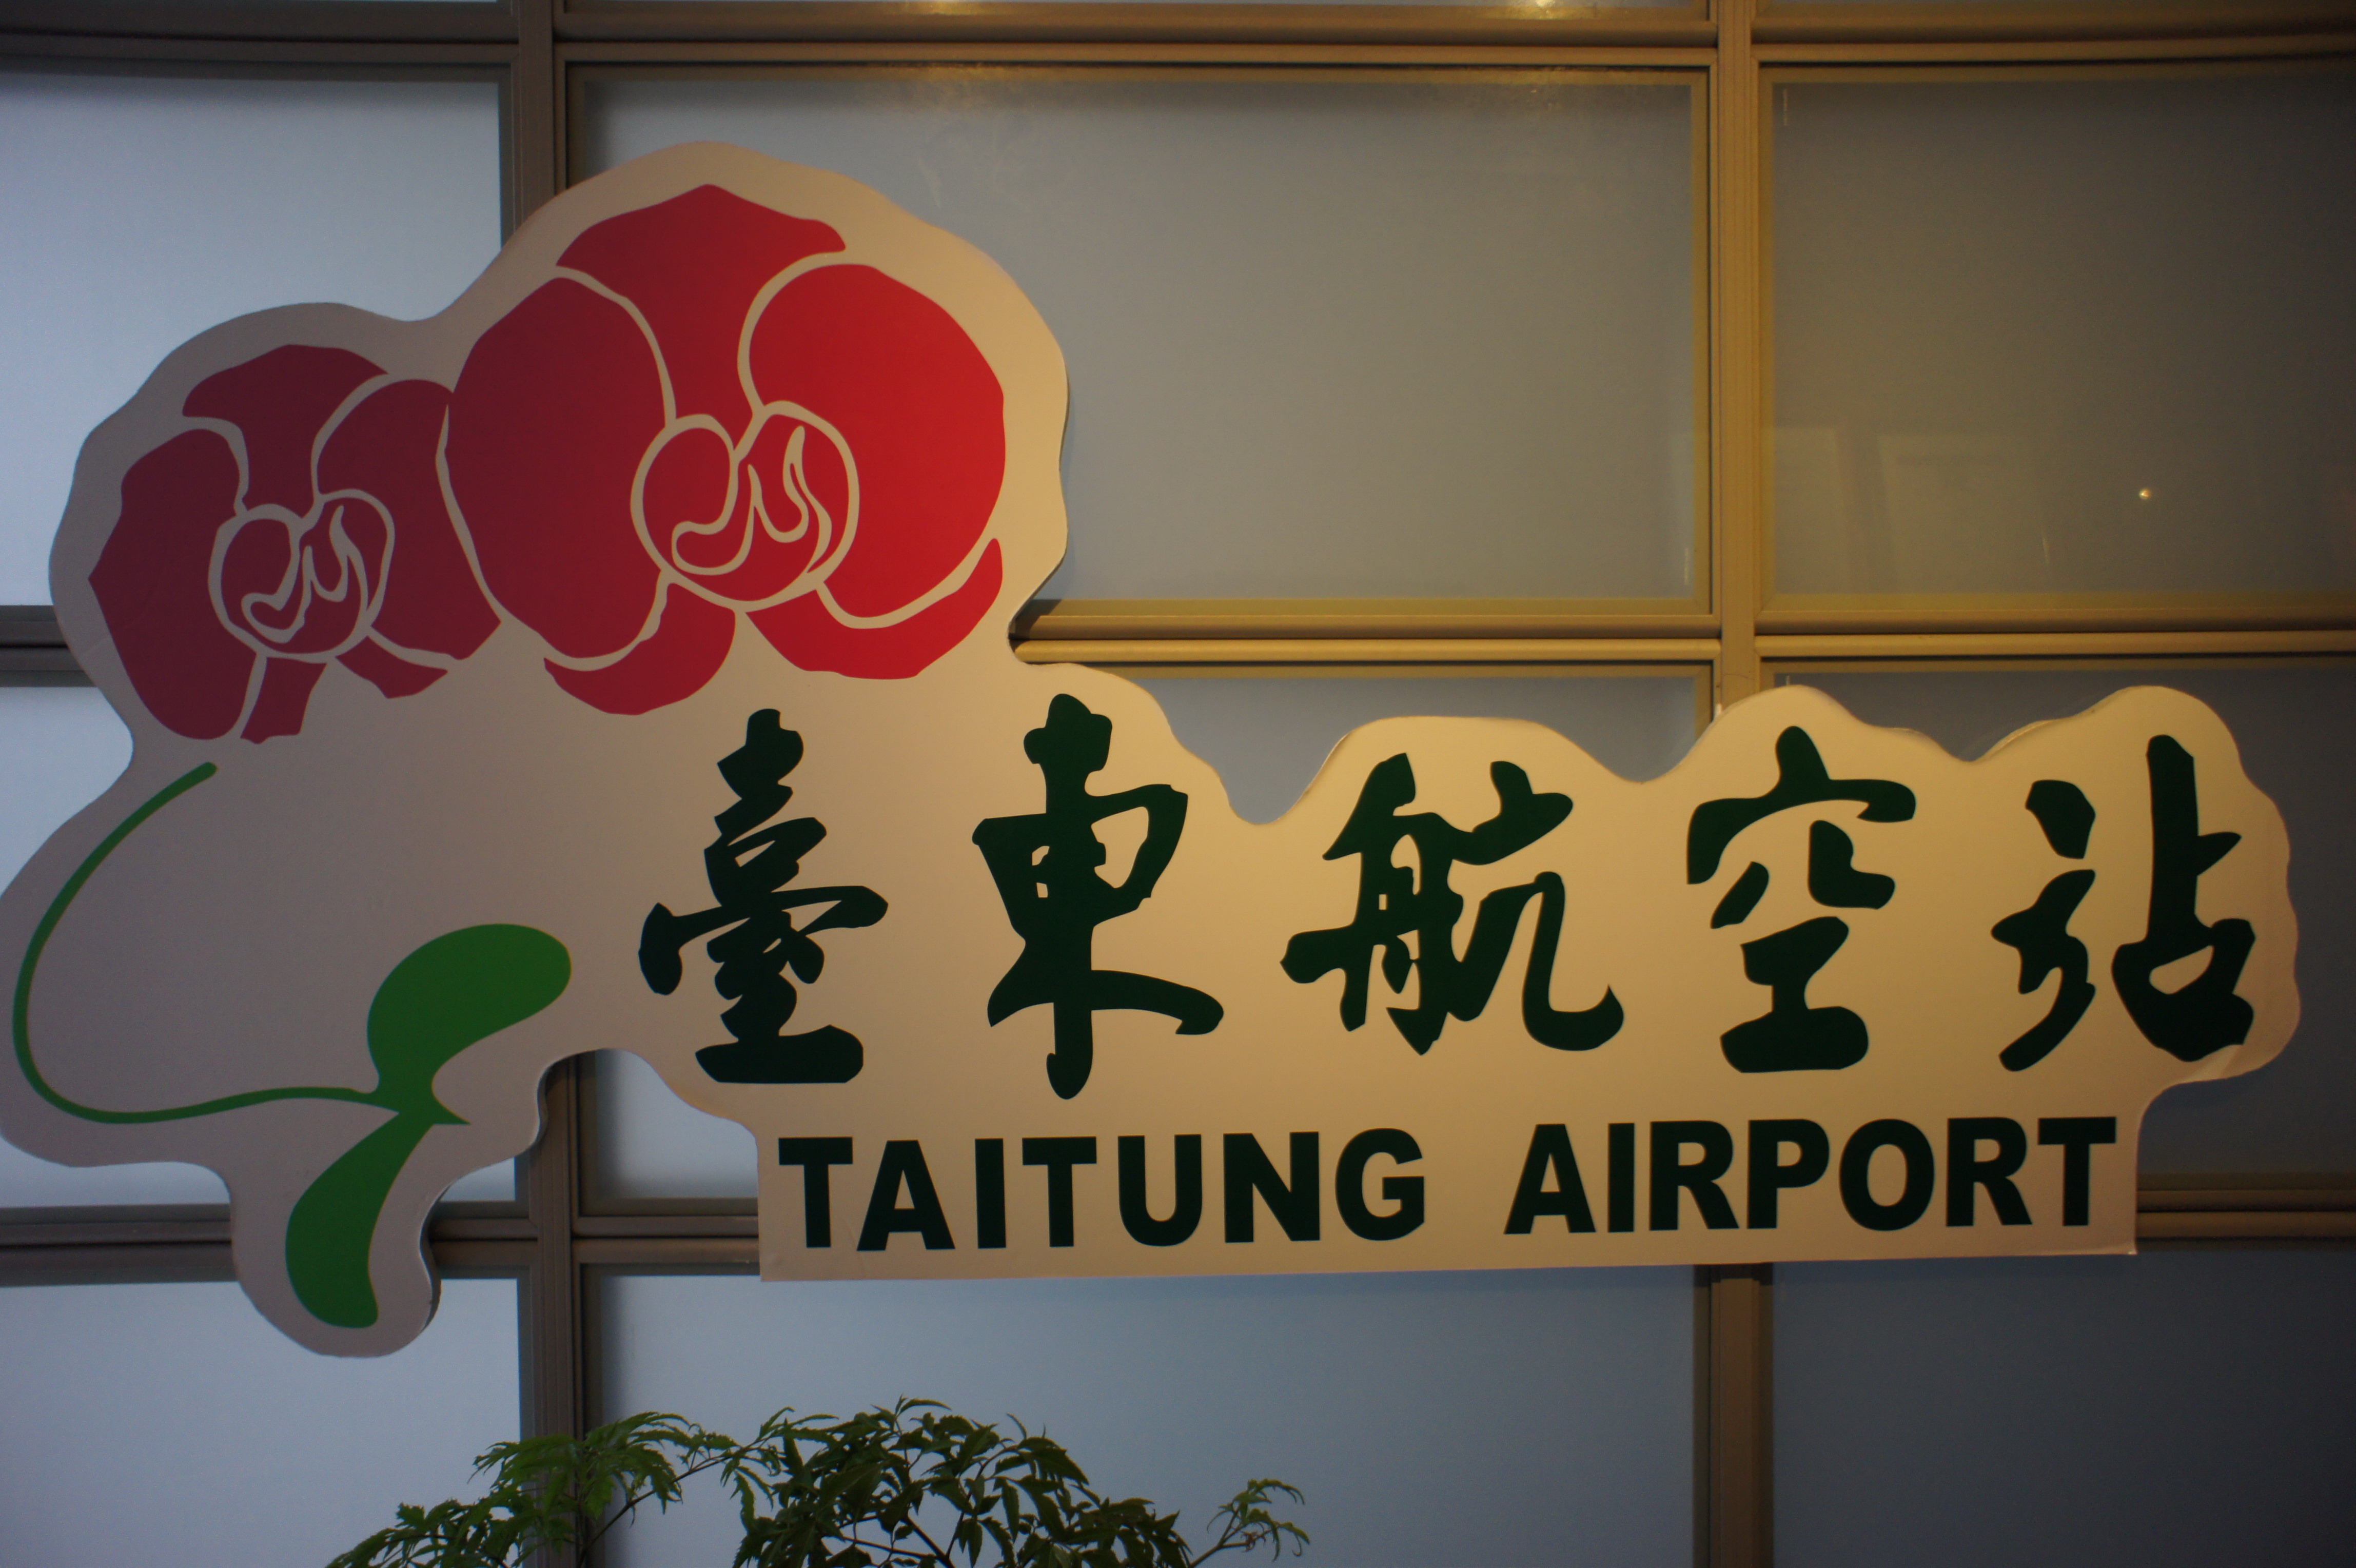 2.臺東航空站Logo